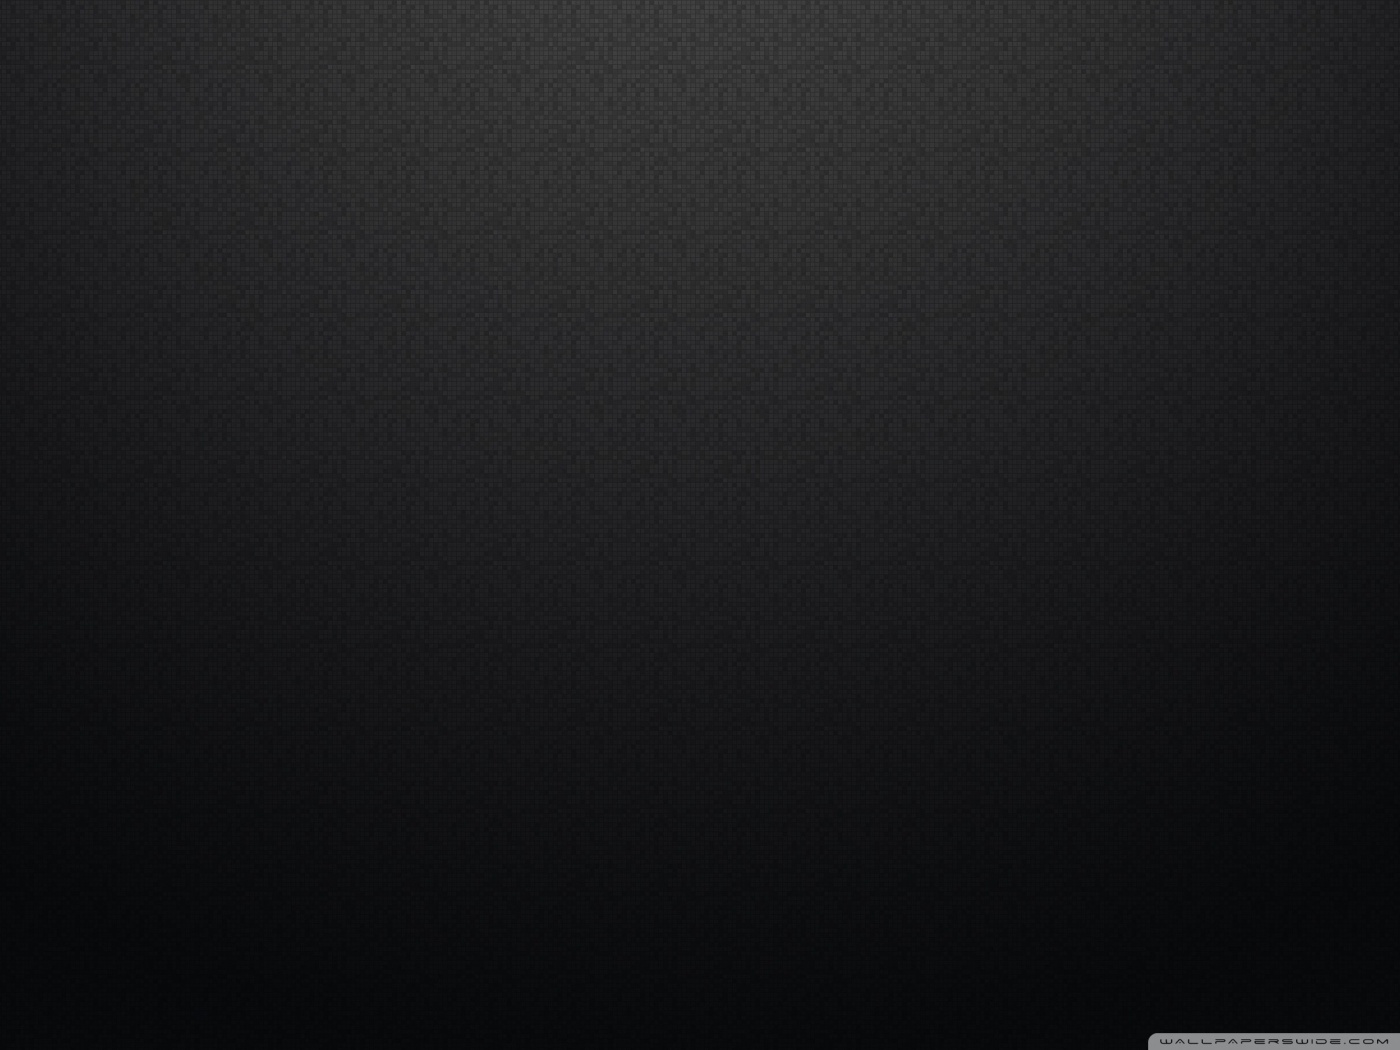 Pixel Art Pattern Black Ultra HD Desktop Background Wallpaper for 4K